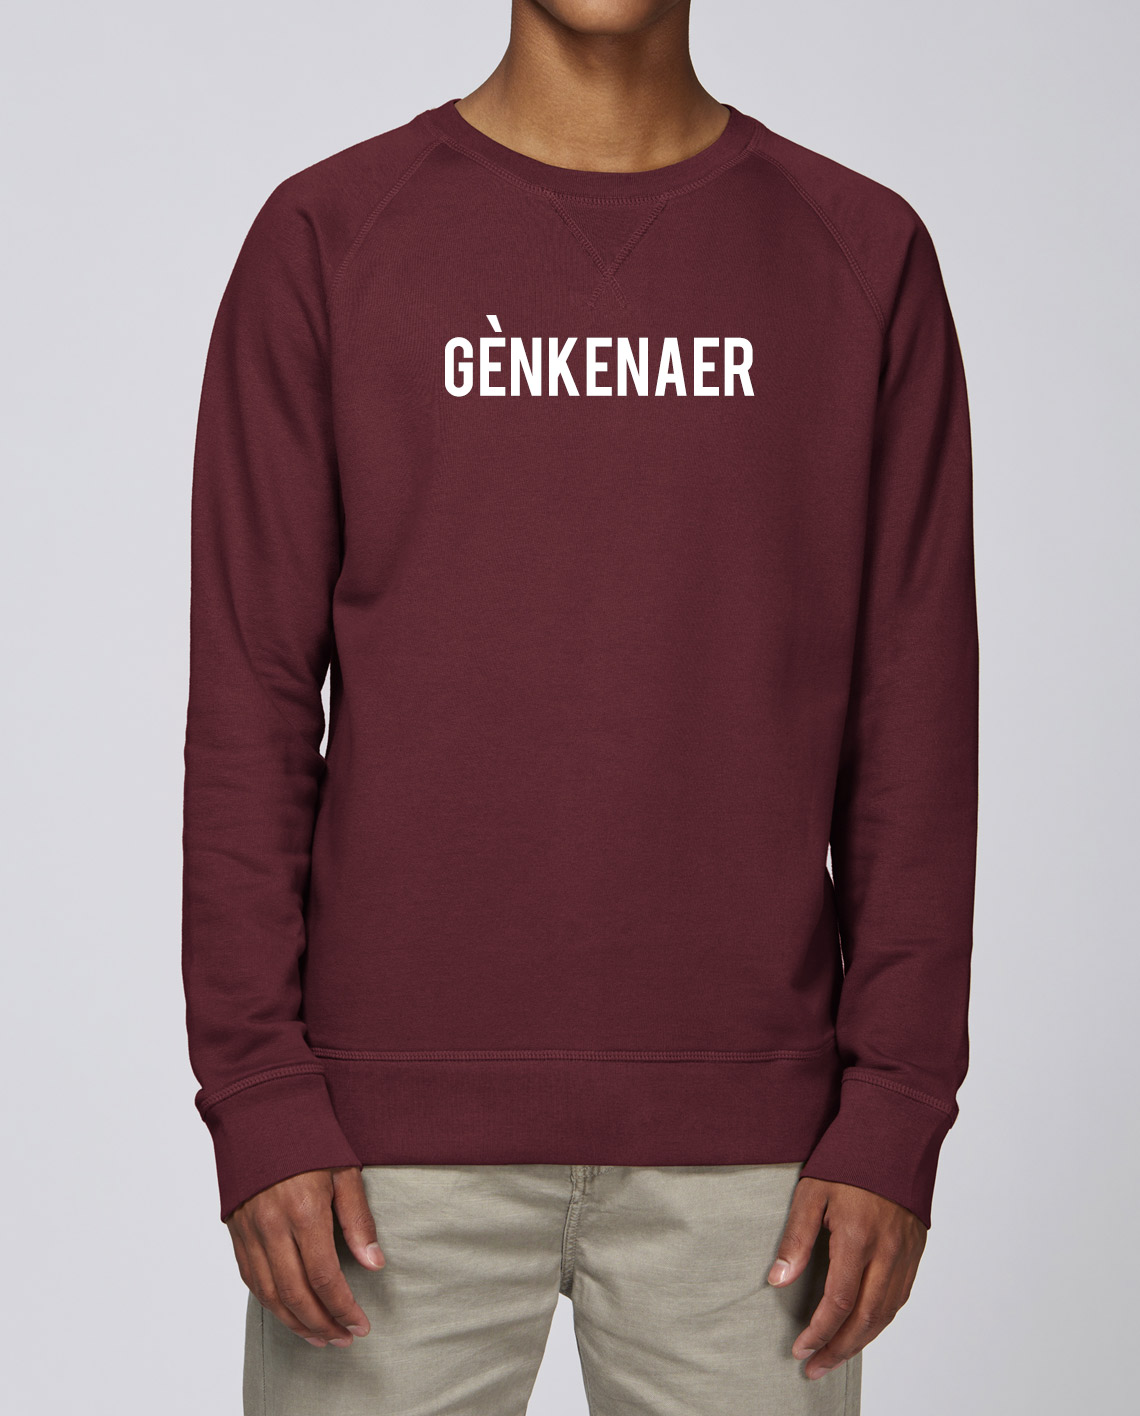 genk sweater online bestellen